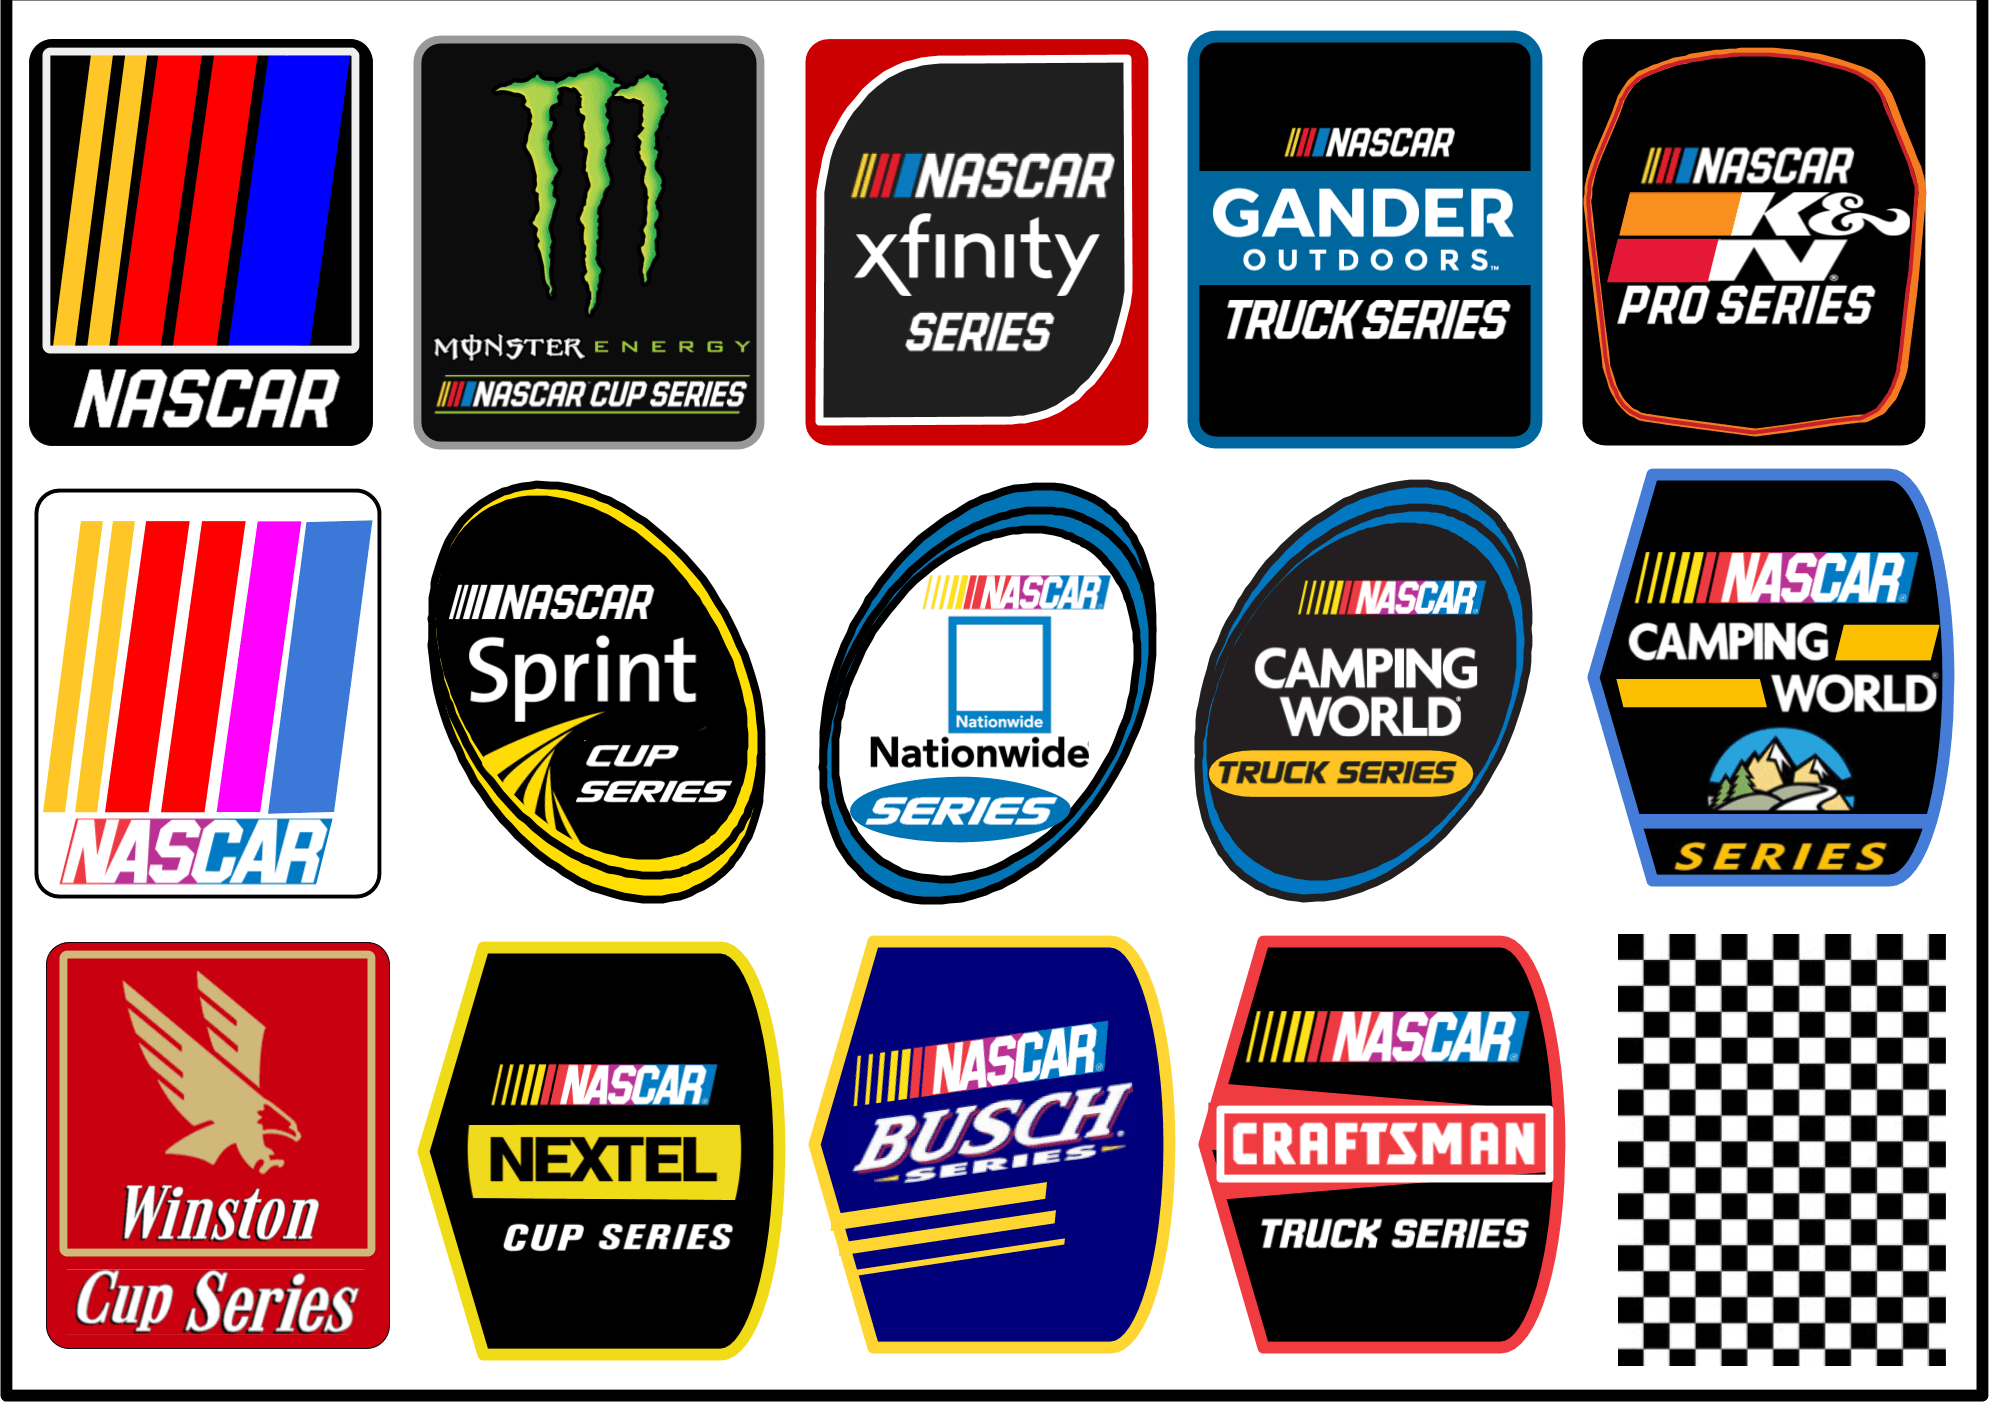 Nascar.com Logo - If NASCAR logos were vertical instead of horizontal.. : NASCAR